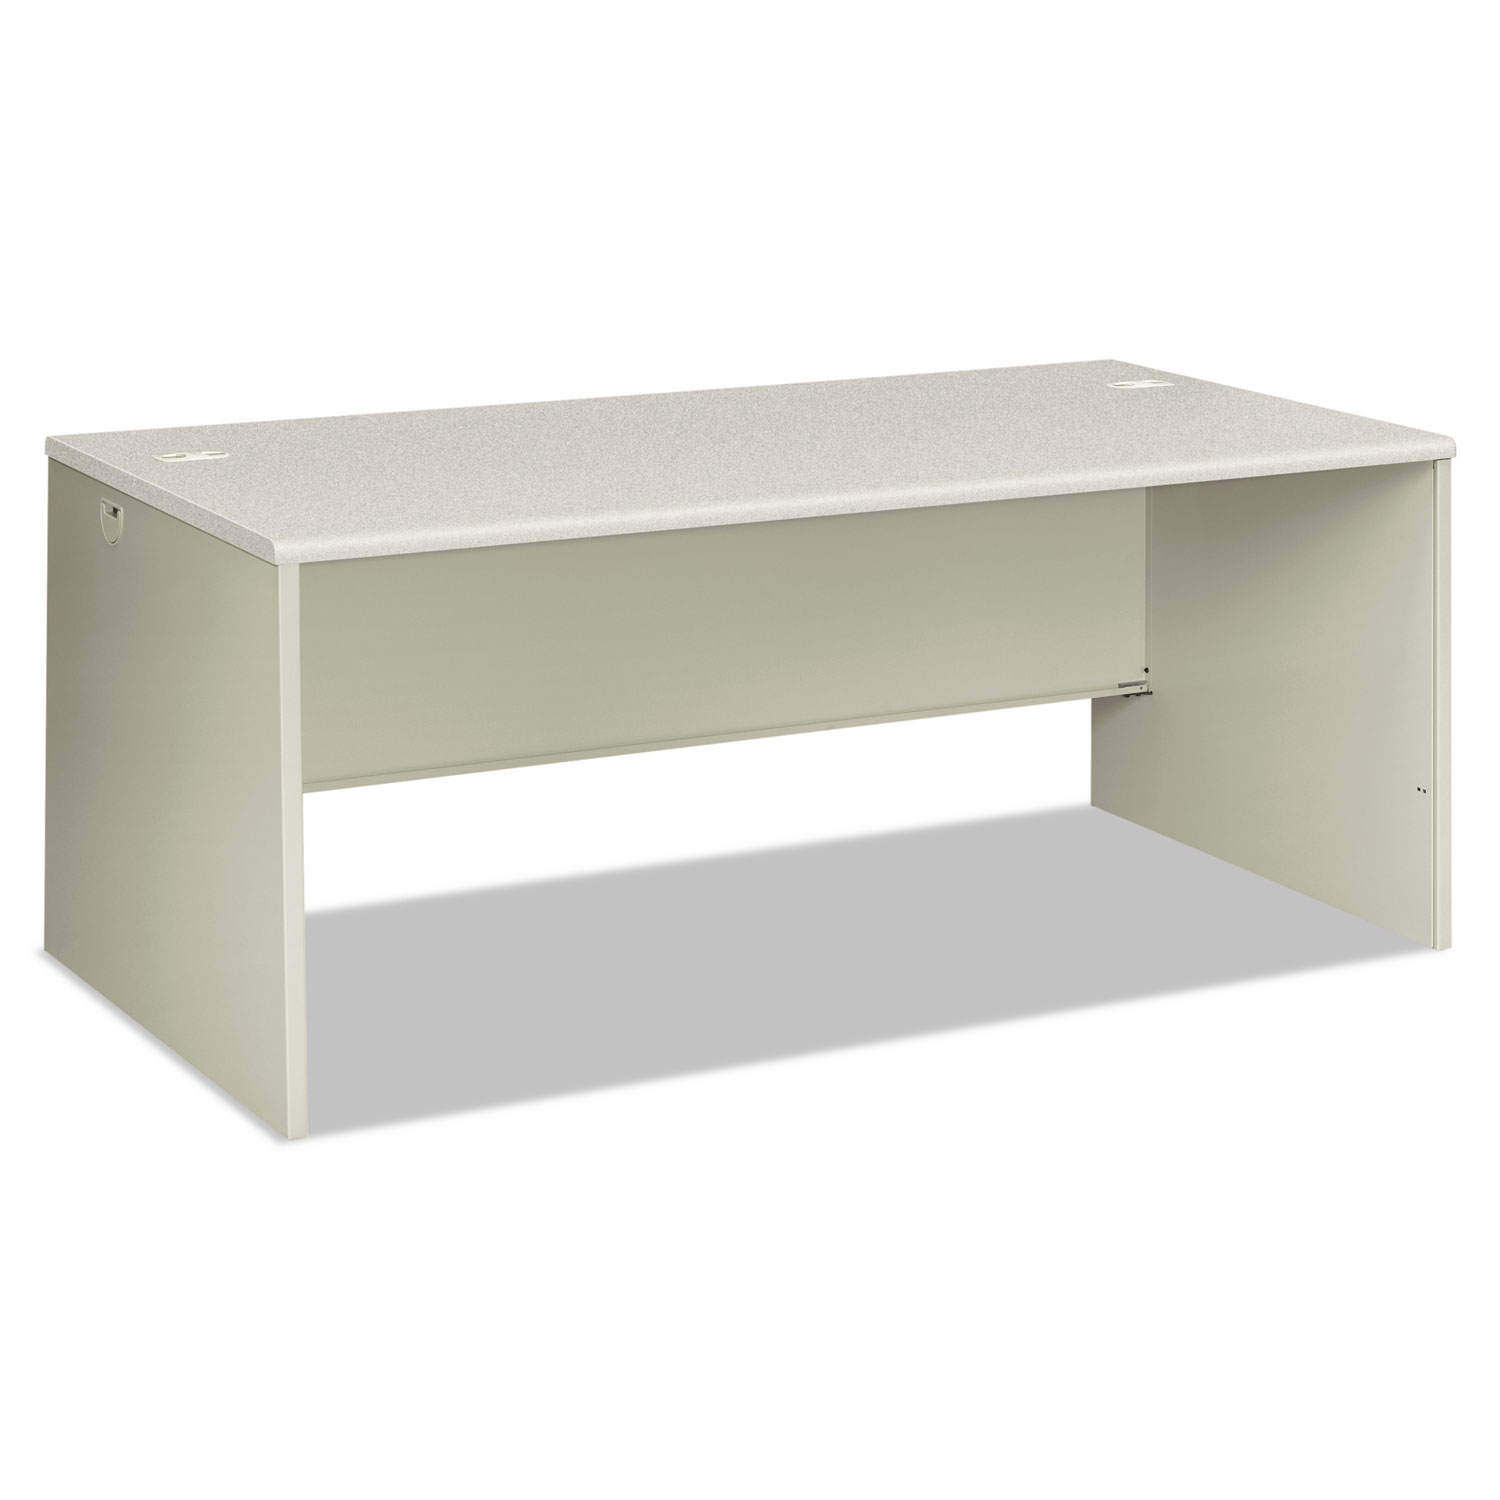  HON H38934.B9.Q 38000 Series Desk Shell, 72w x 36d x 30h, Silver Mesh/Light Gray (HON38934B9Q) 